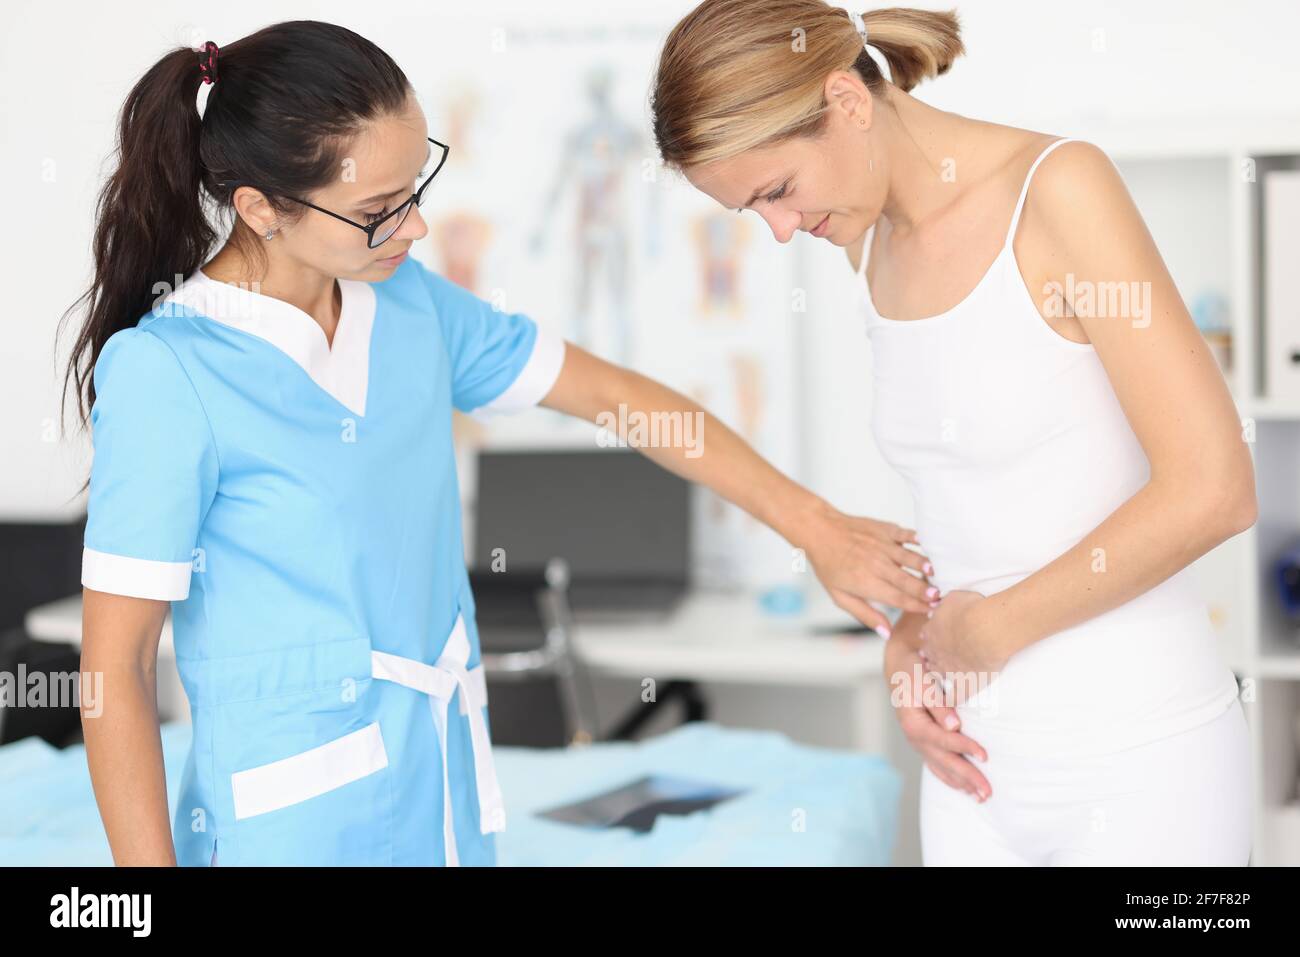 Der Arzt bietet der Frau mit Bauchschmerzen medizinische Hilfe an Stockfoto